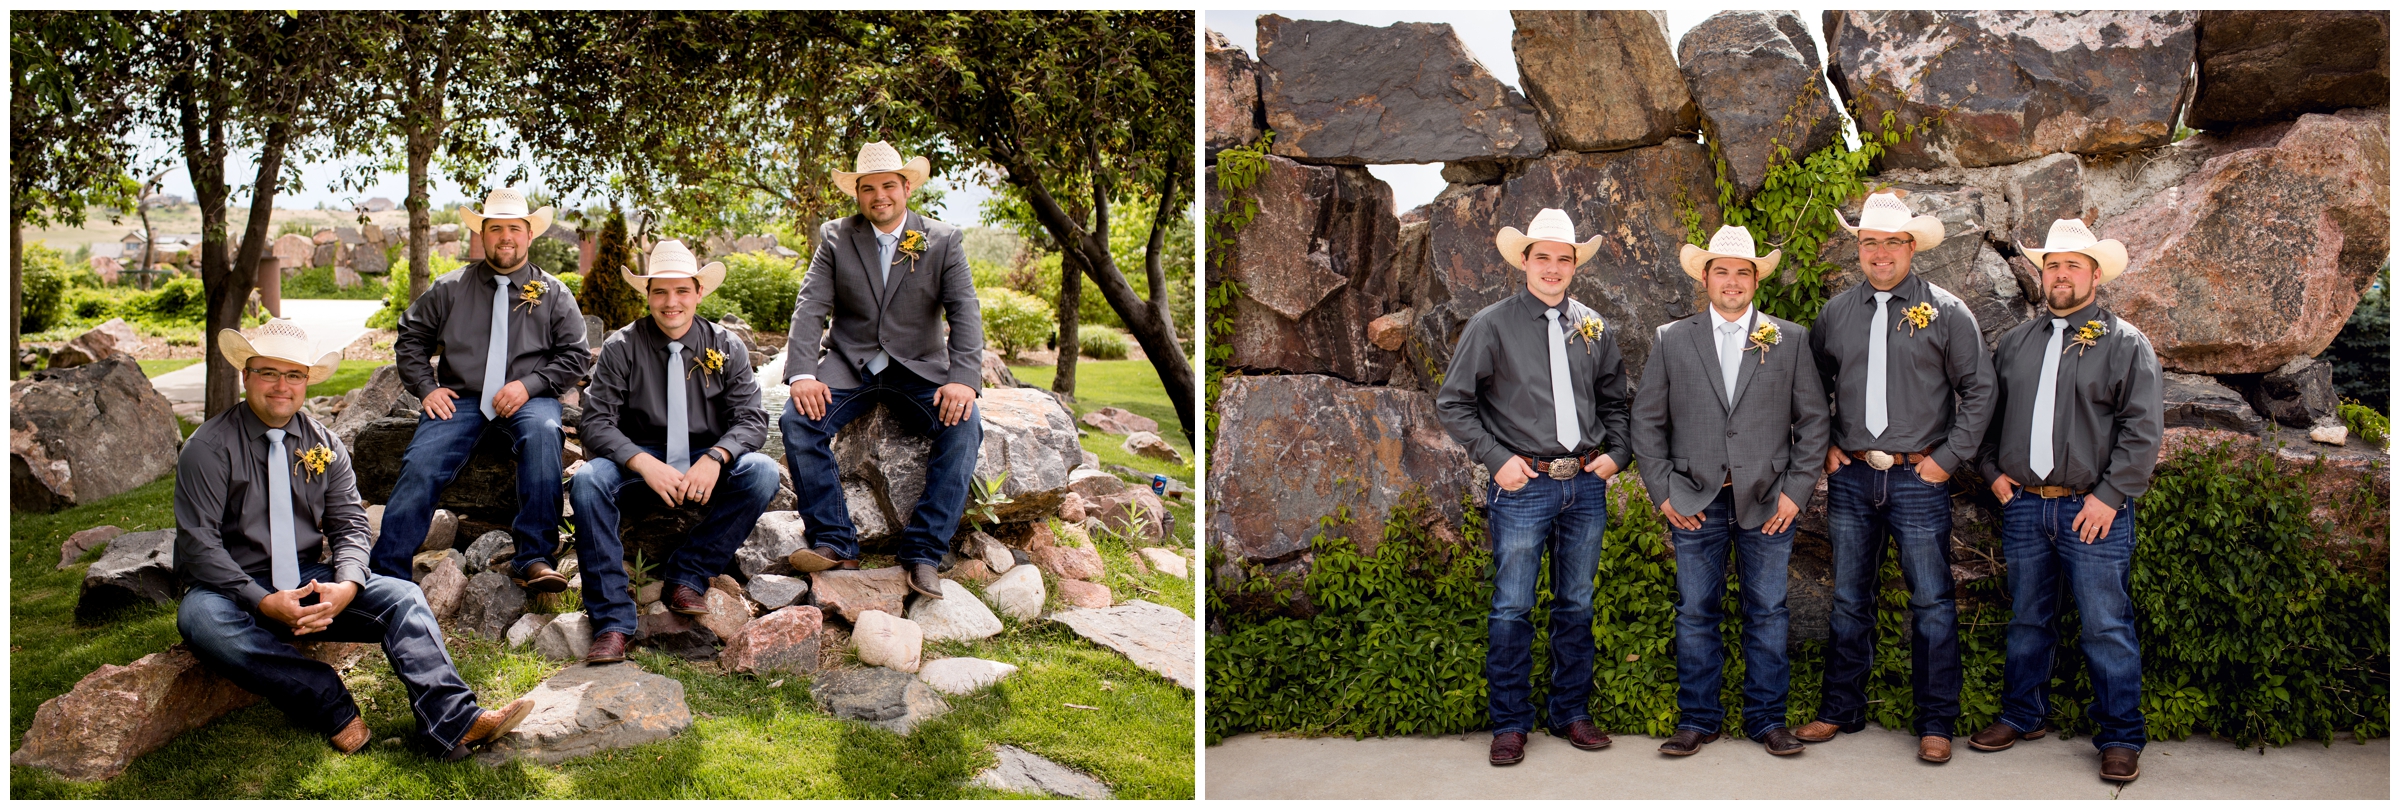 groom and groomsmen in cowboy hats at Colorado golf course wedding